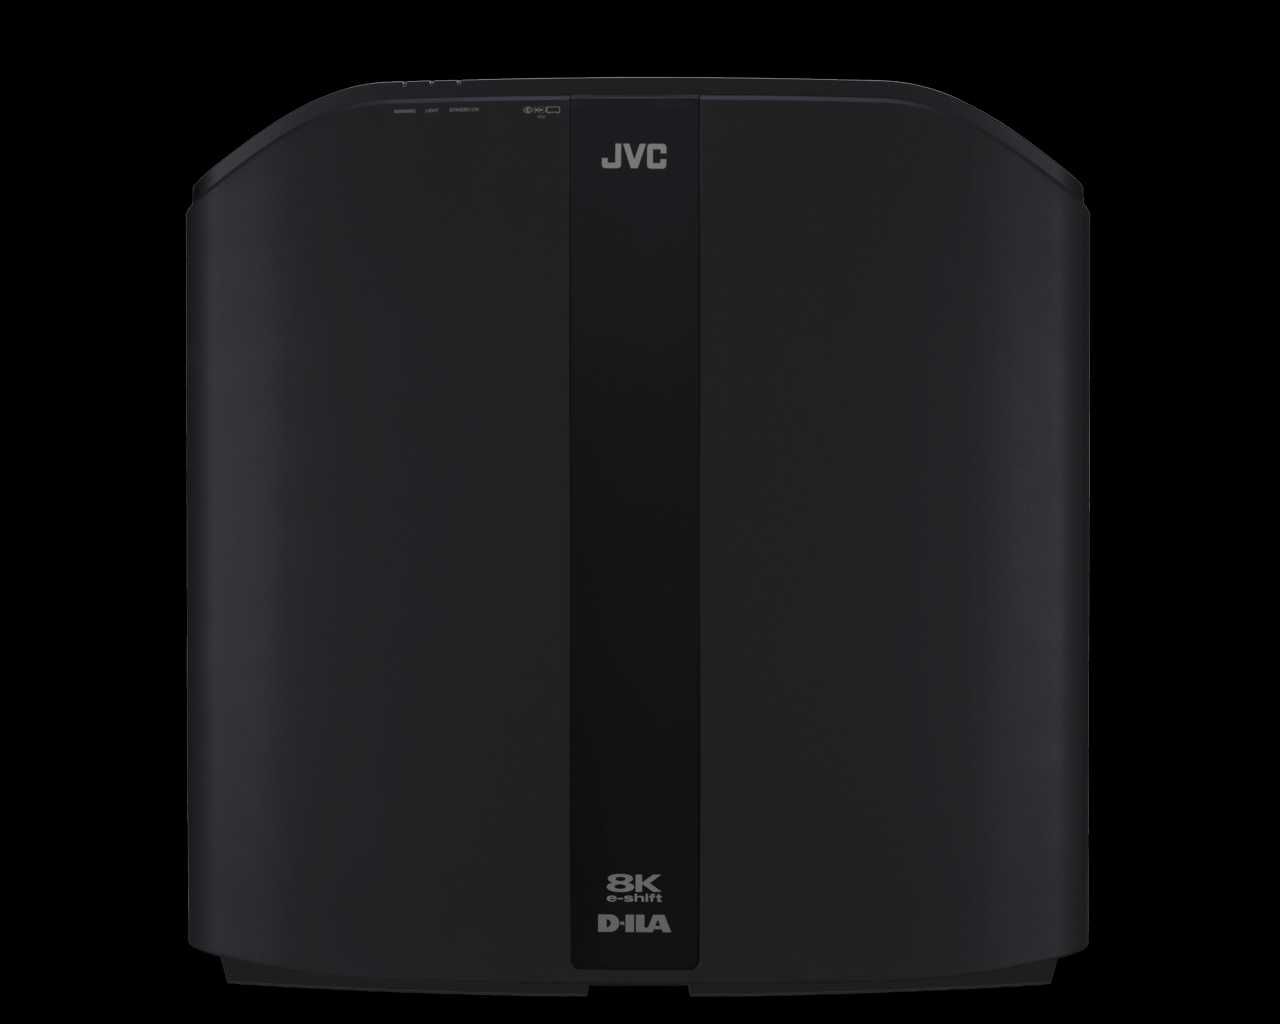 Laserowy projektor JVC DLA-RS2100 8K sprawdź szczegóły